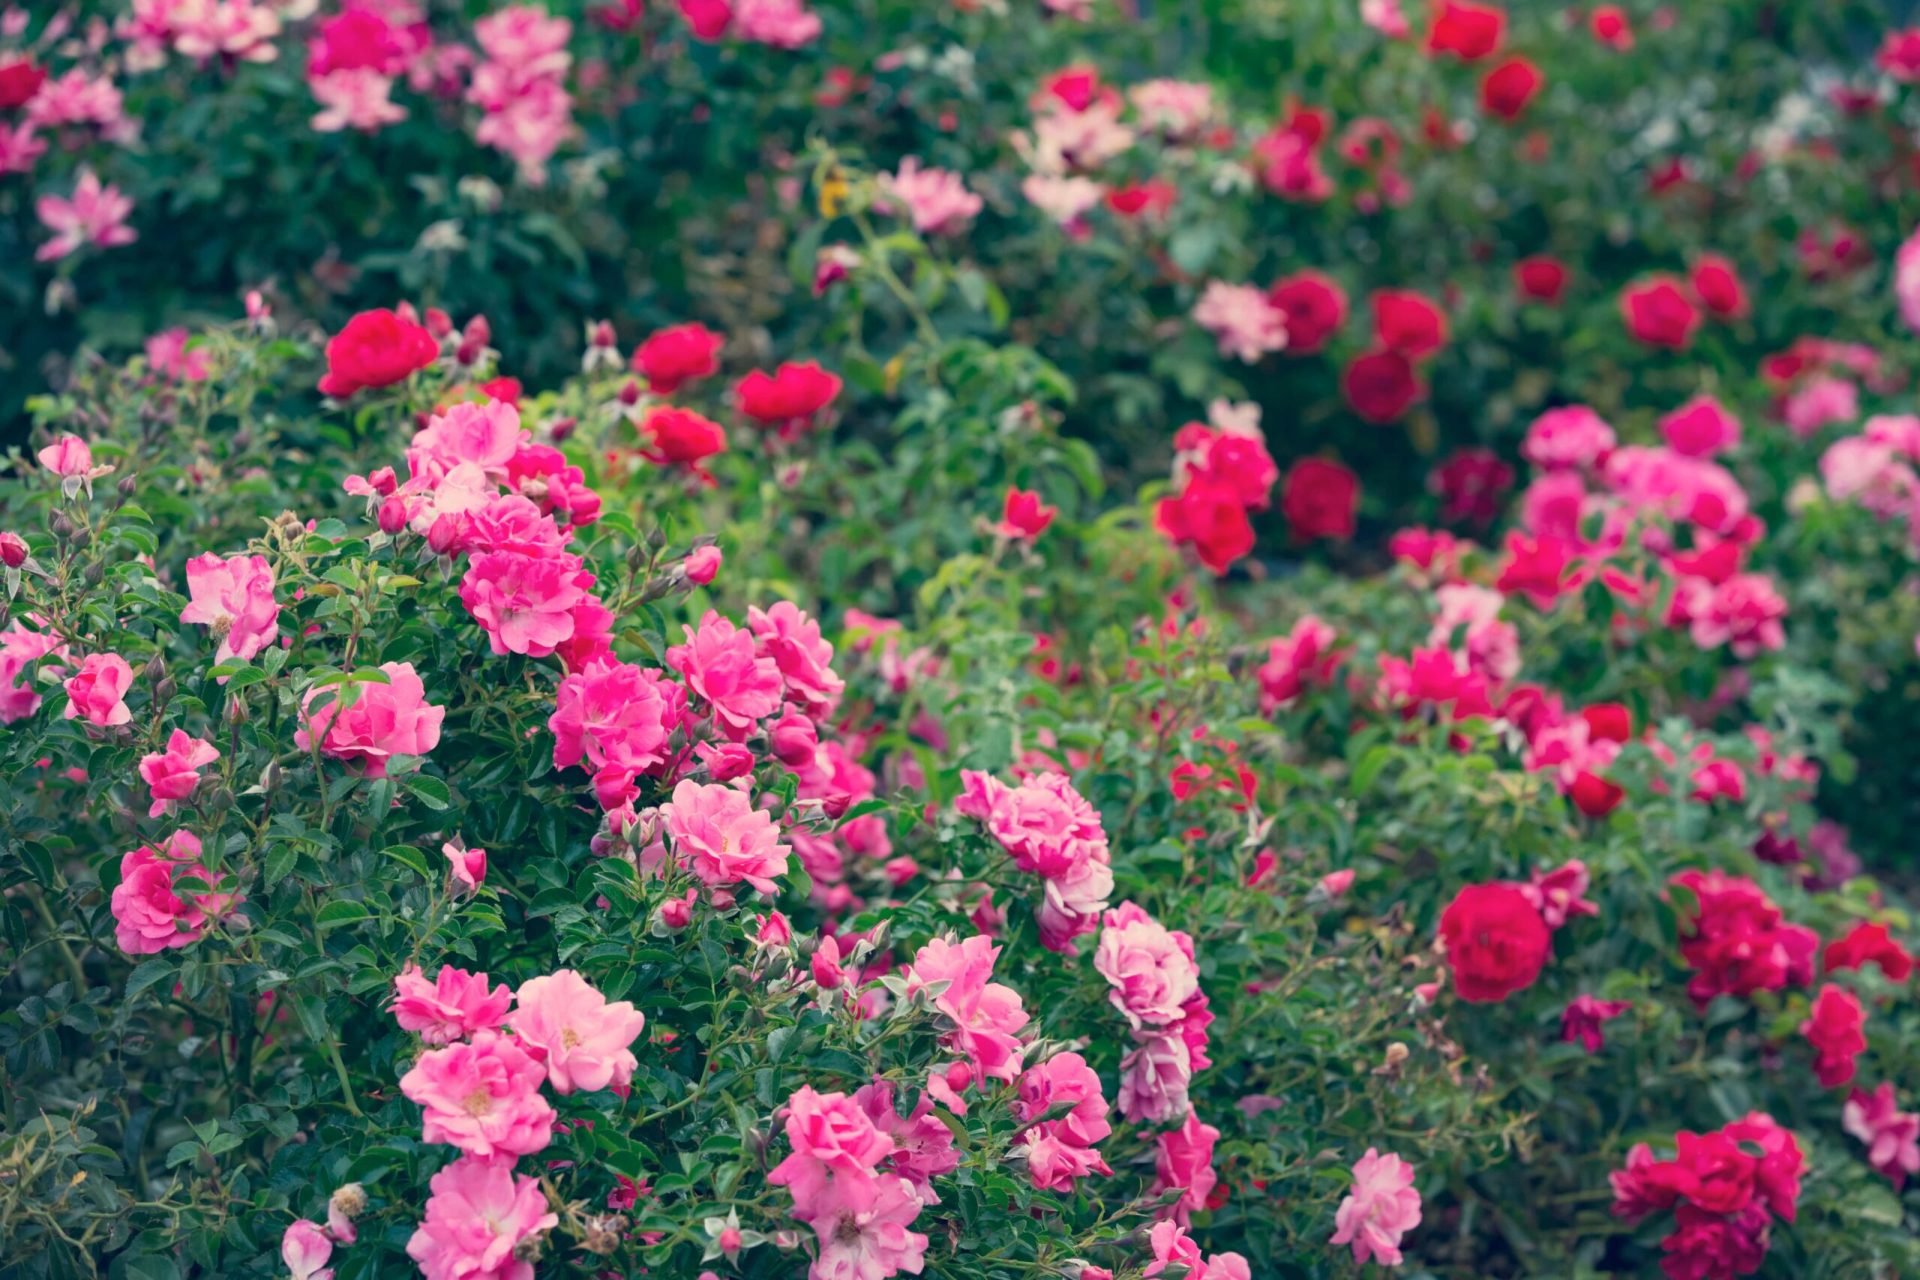 Pink rose bushes - rose growing guide